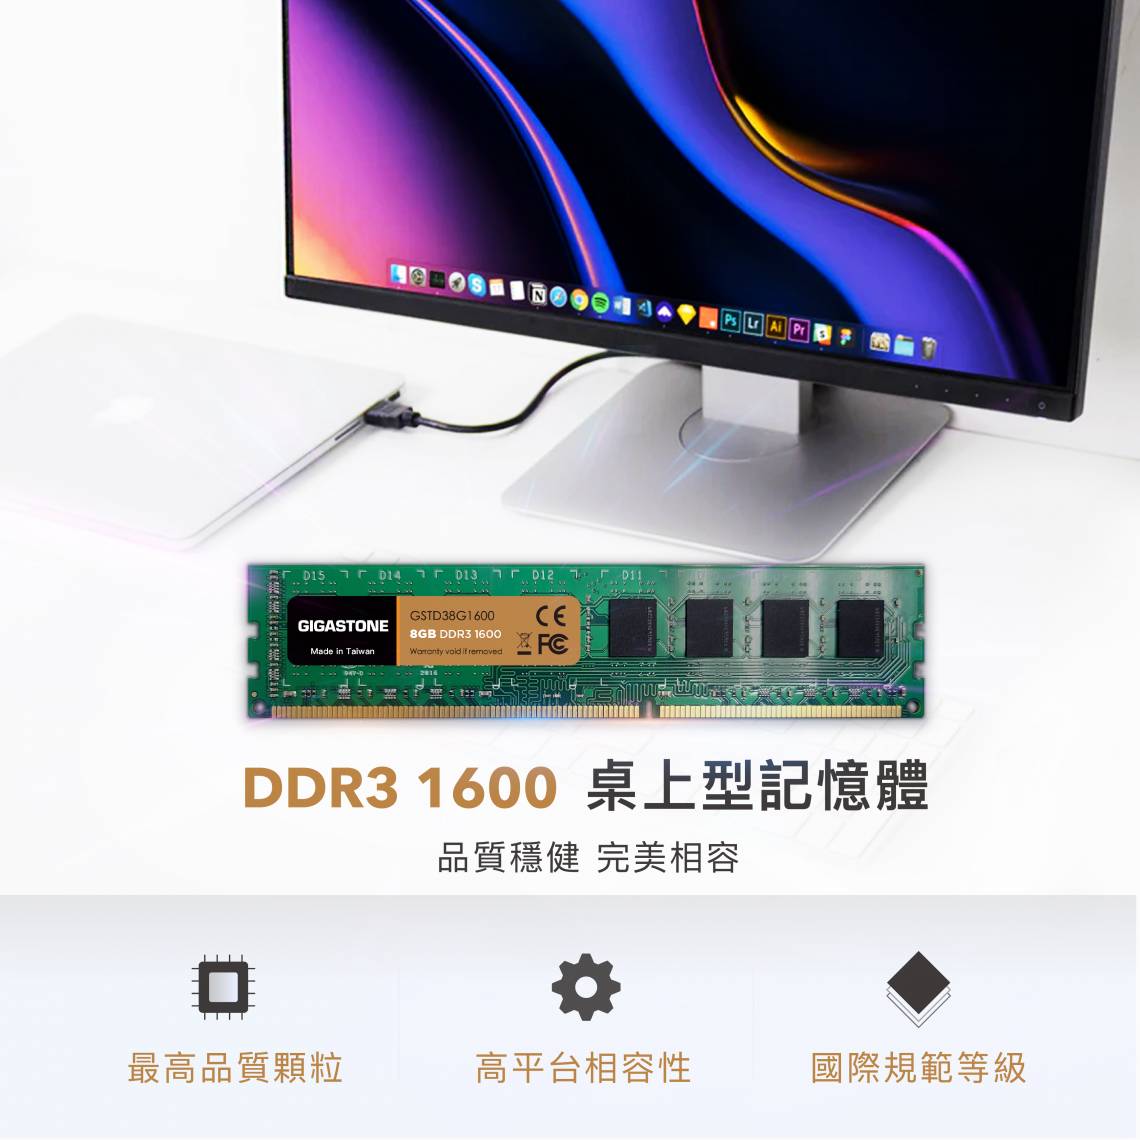 DDR3 UDIMM_01.jpg